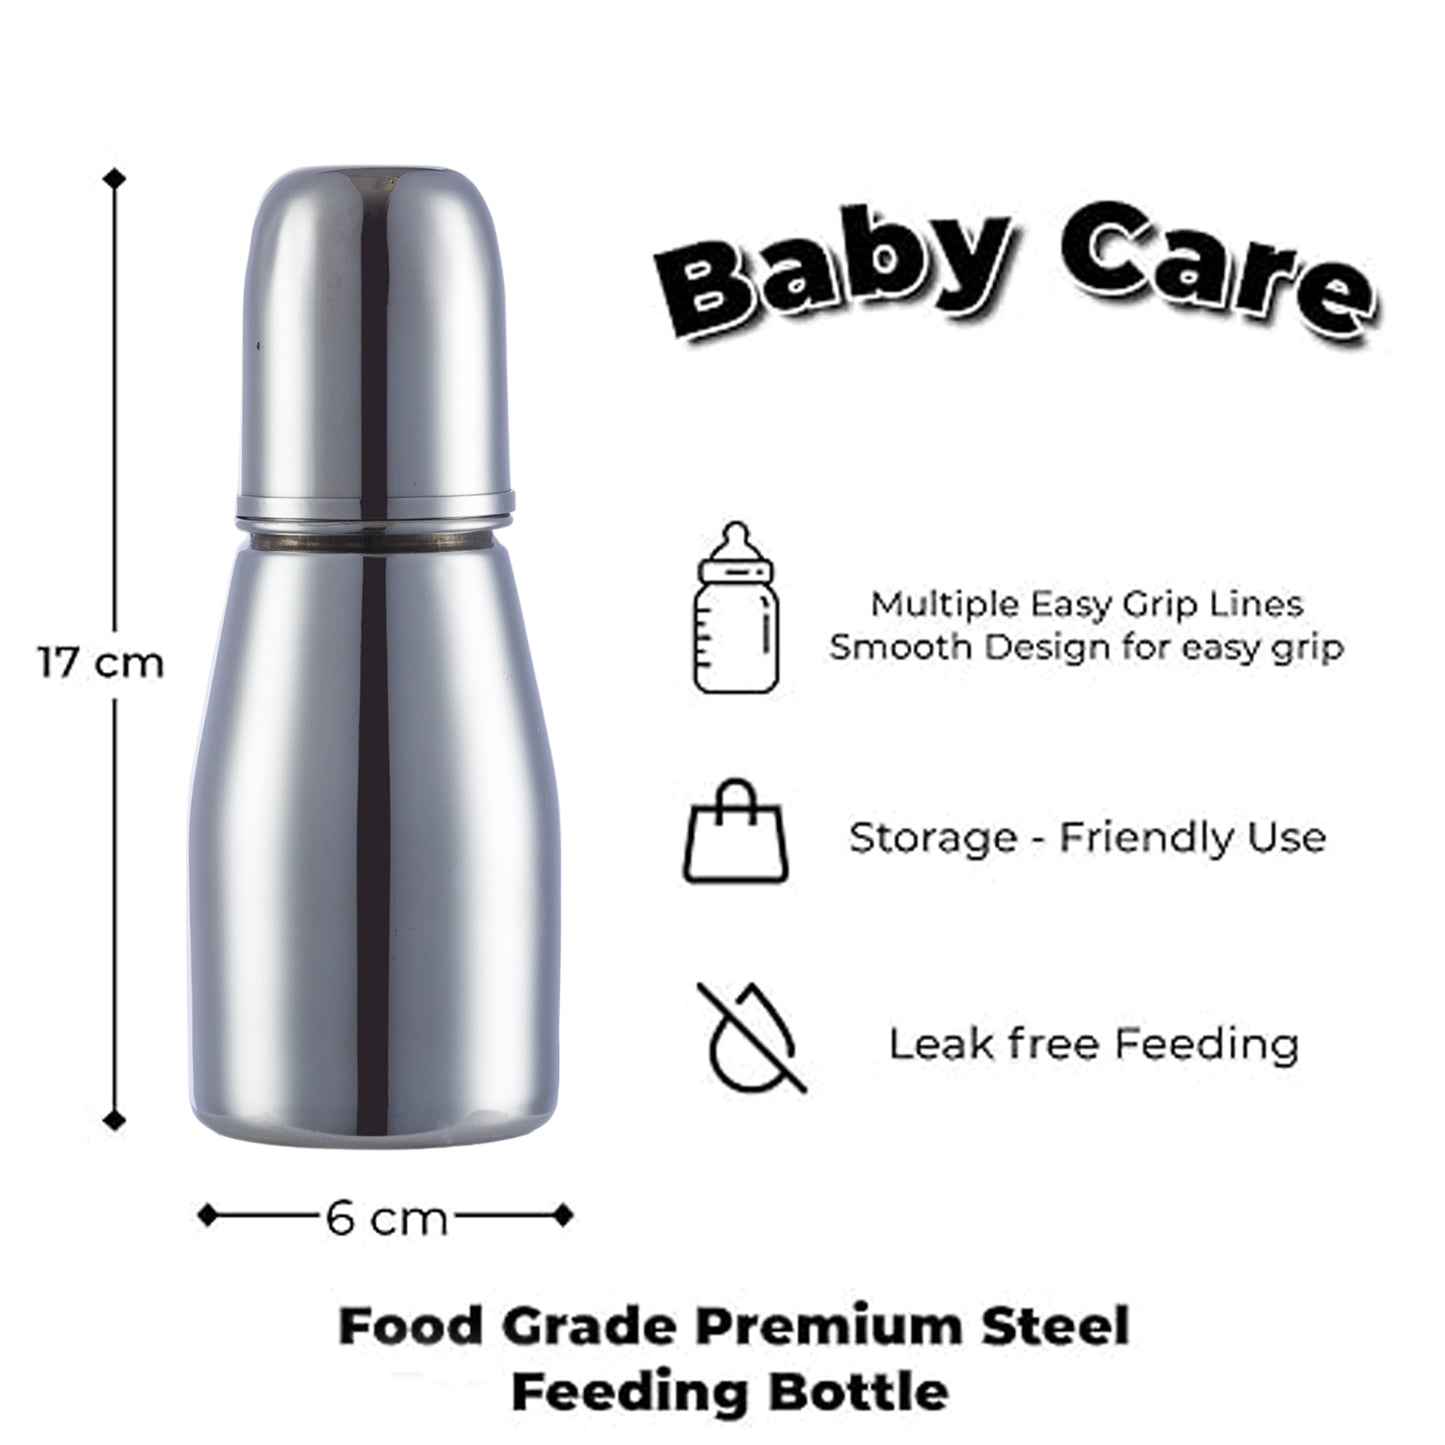 VParents Grade 304 Tapper Stainless Steel Baby Feeding Bottle -250 ml